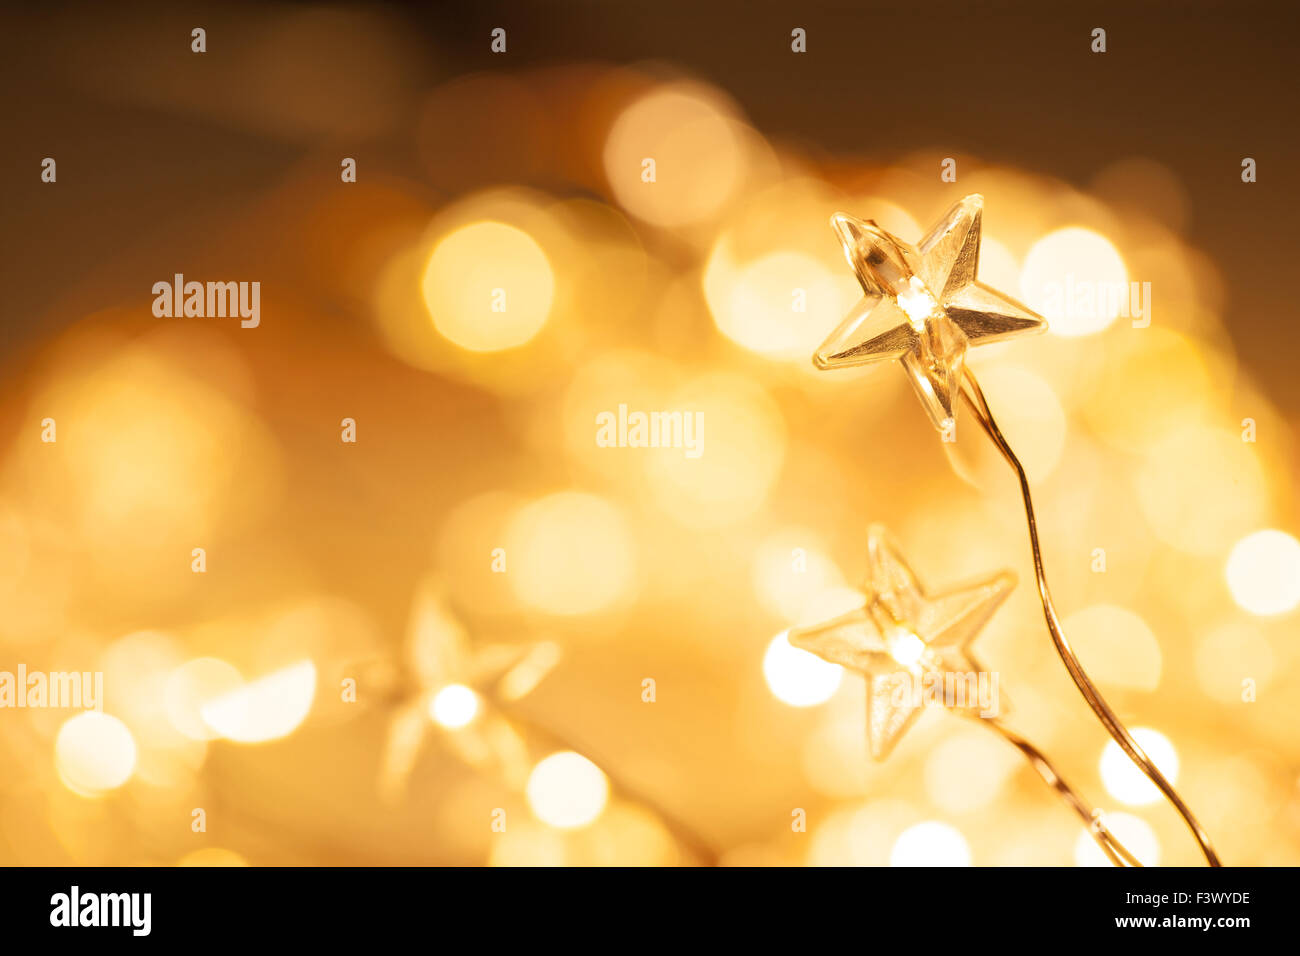 Wunderschöne Weihnachtsbeleuchtung erschossen Nahaufnahme mit selektiven Fokus Stockfoto